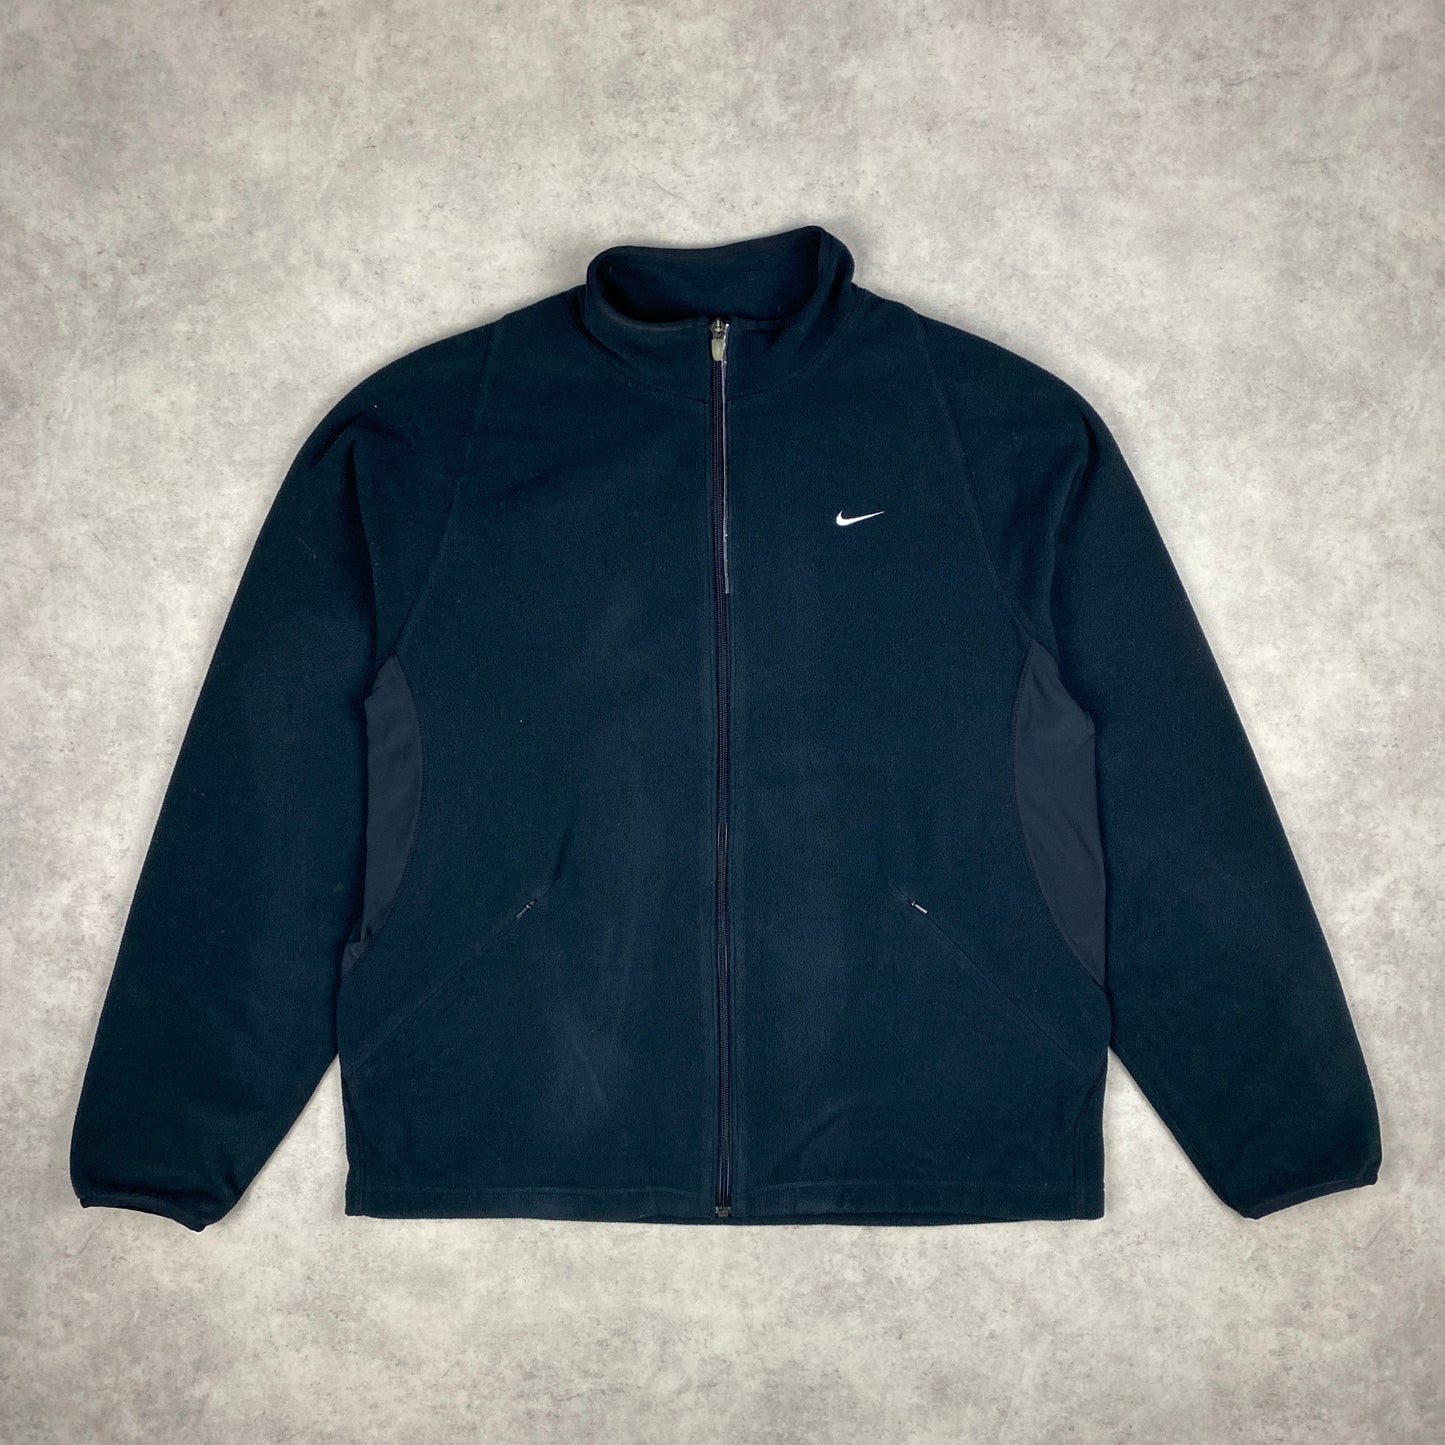 Nike fleece zip sweater (L)